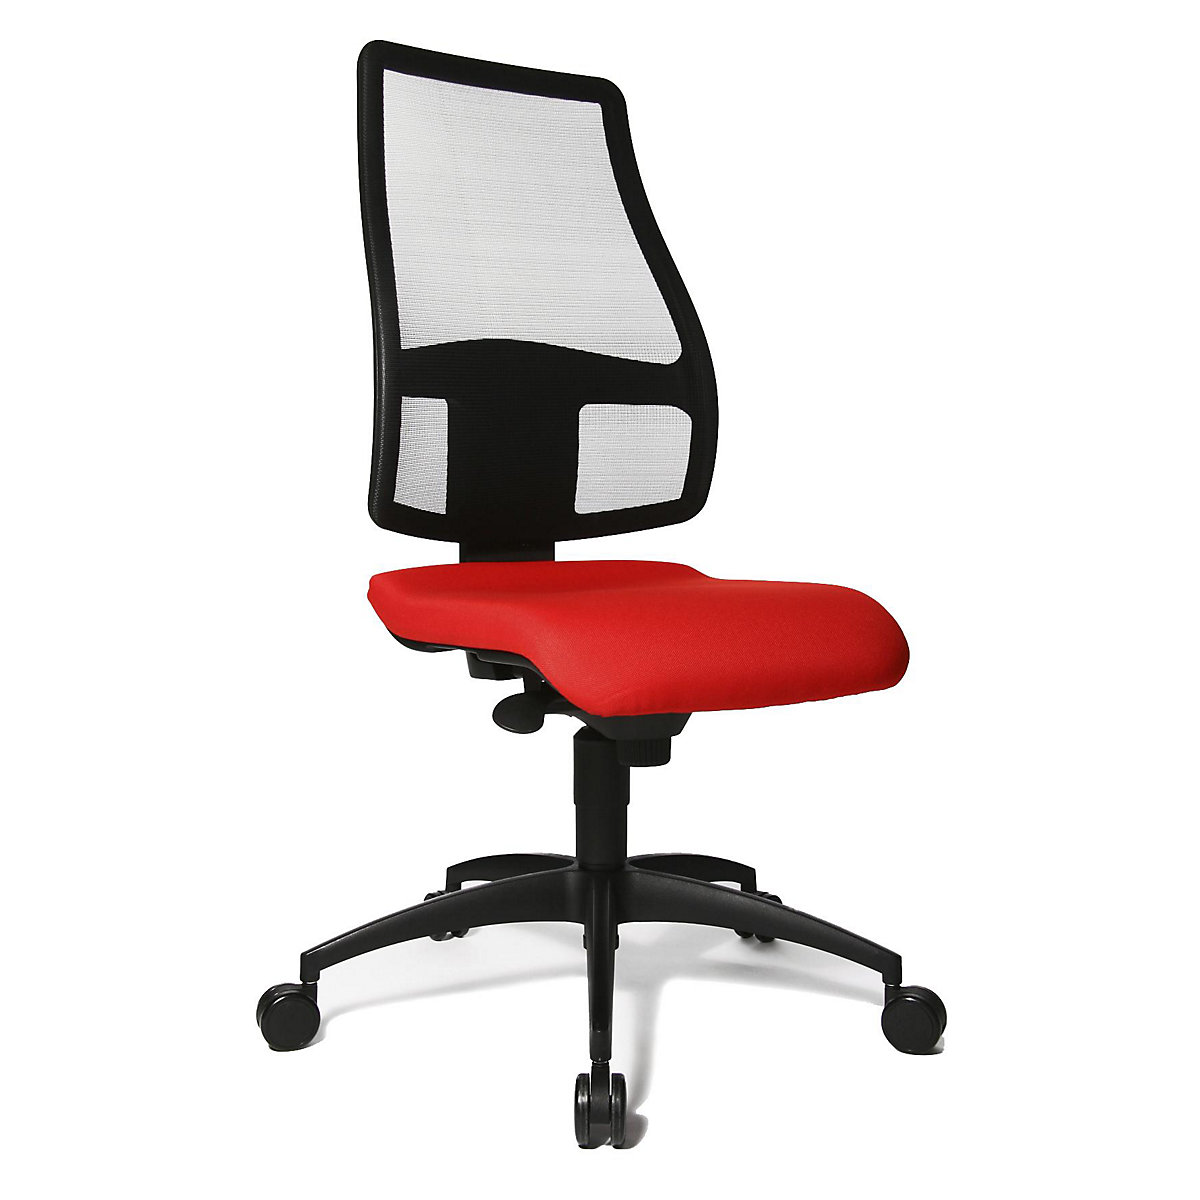 Chaise pivotante ergonomique, hauteur dossier 680 mm – Topstar, dossier en résille anti-transpiration, habillage assise rouge clair-4